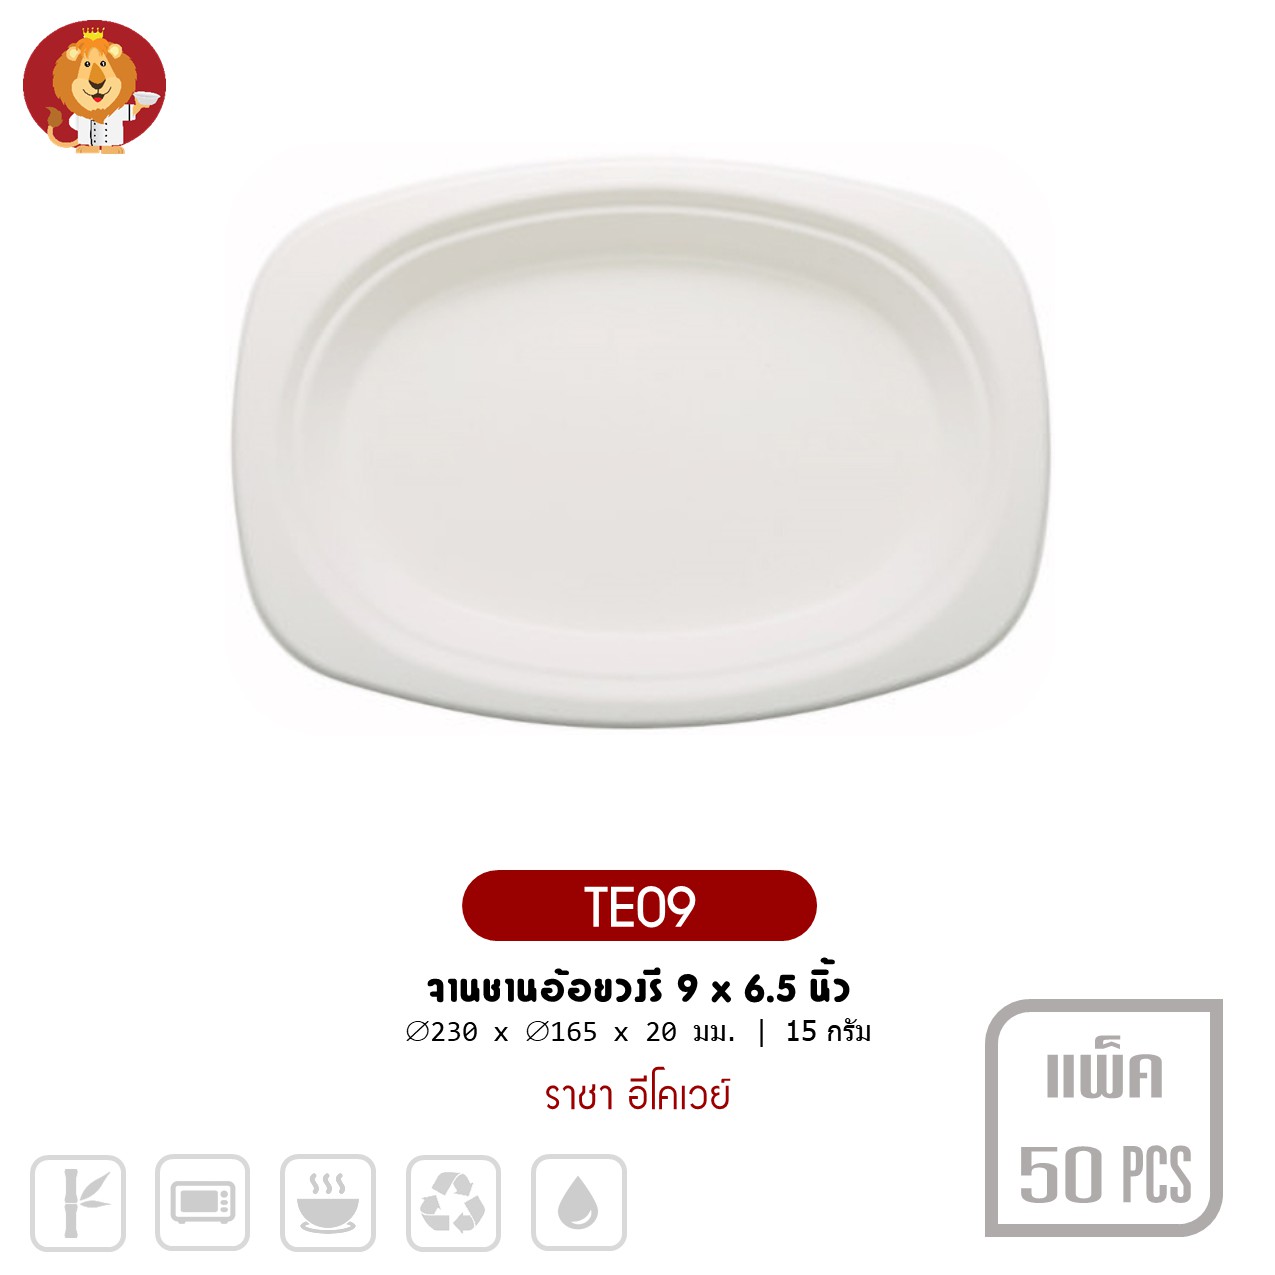 จานชานอ้อยวงรี 9 x 6.5 นิ้ว สีขาว [ TE09 ] แบรนด์ ราชา Ecoway (50 ชิ้นต่อแพ็ค)